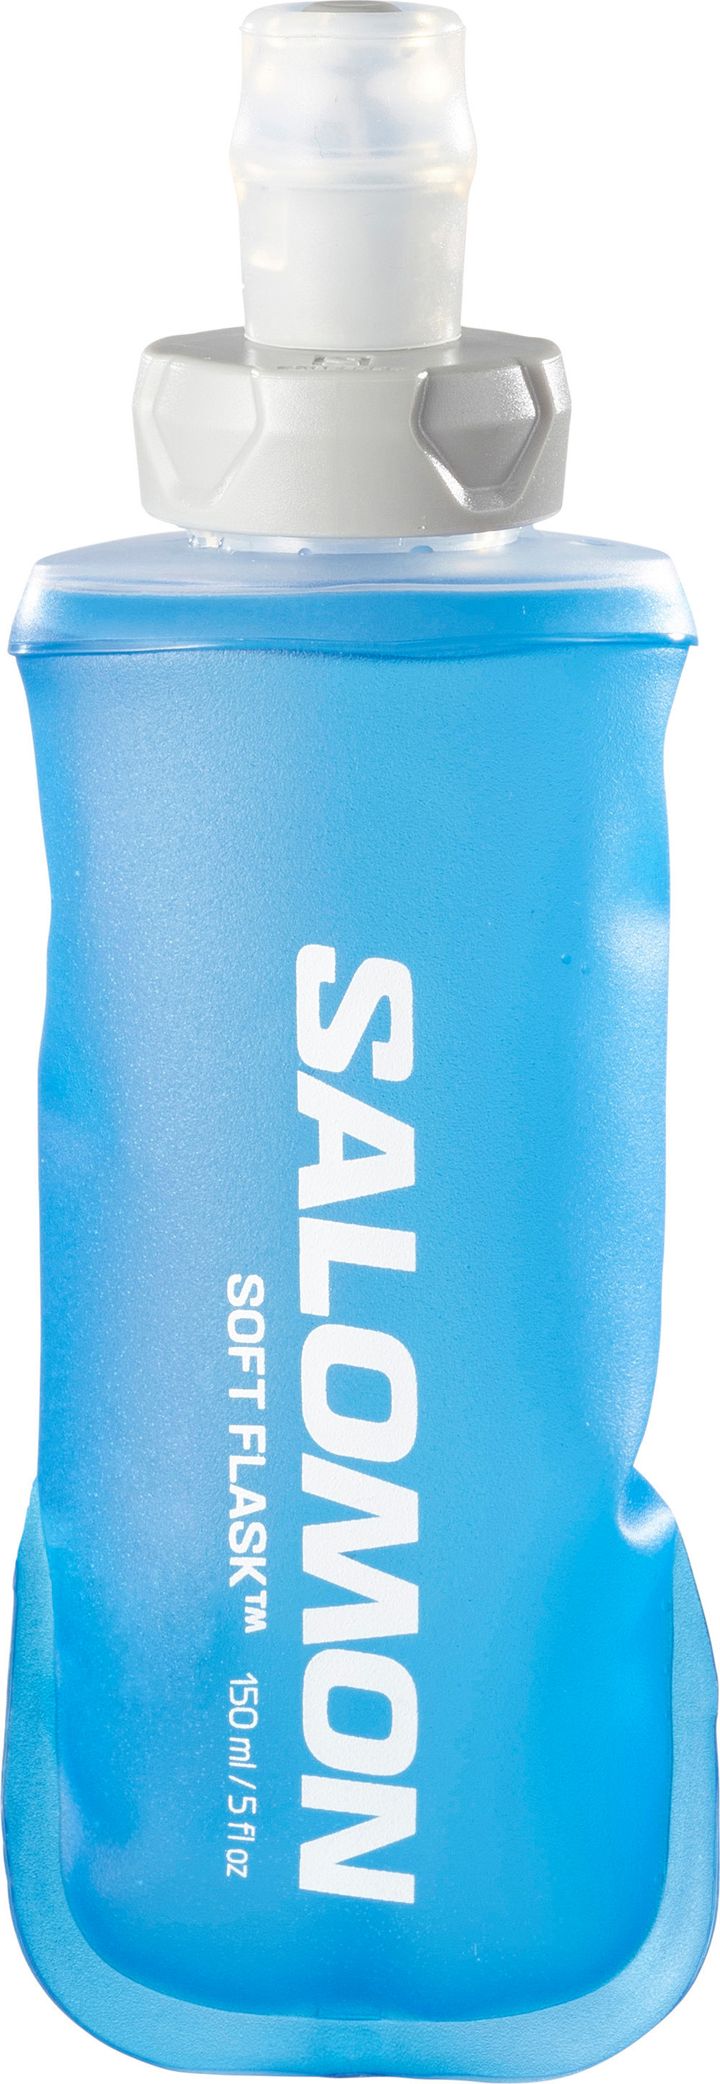 Soft Flask 150ml/5oz 28 Clear Blue